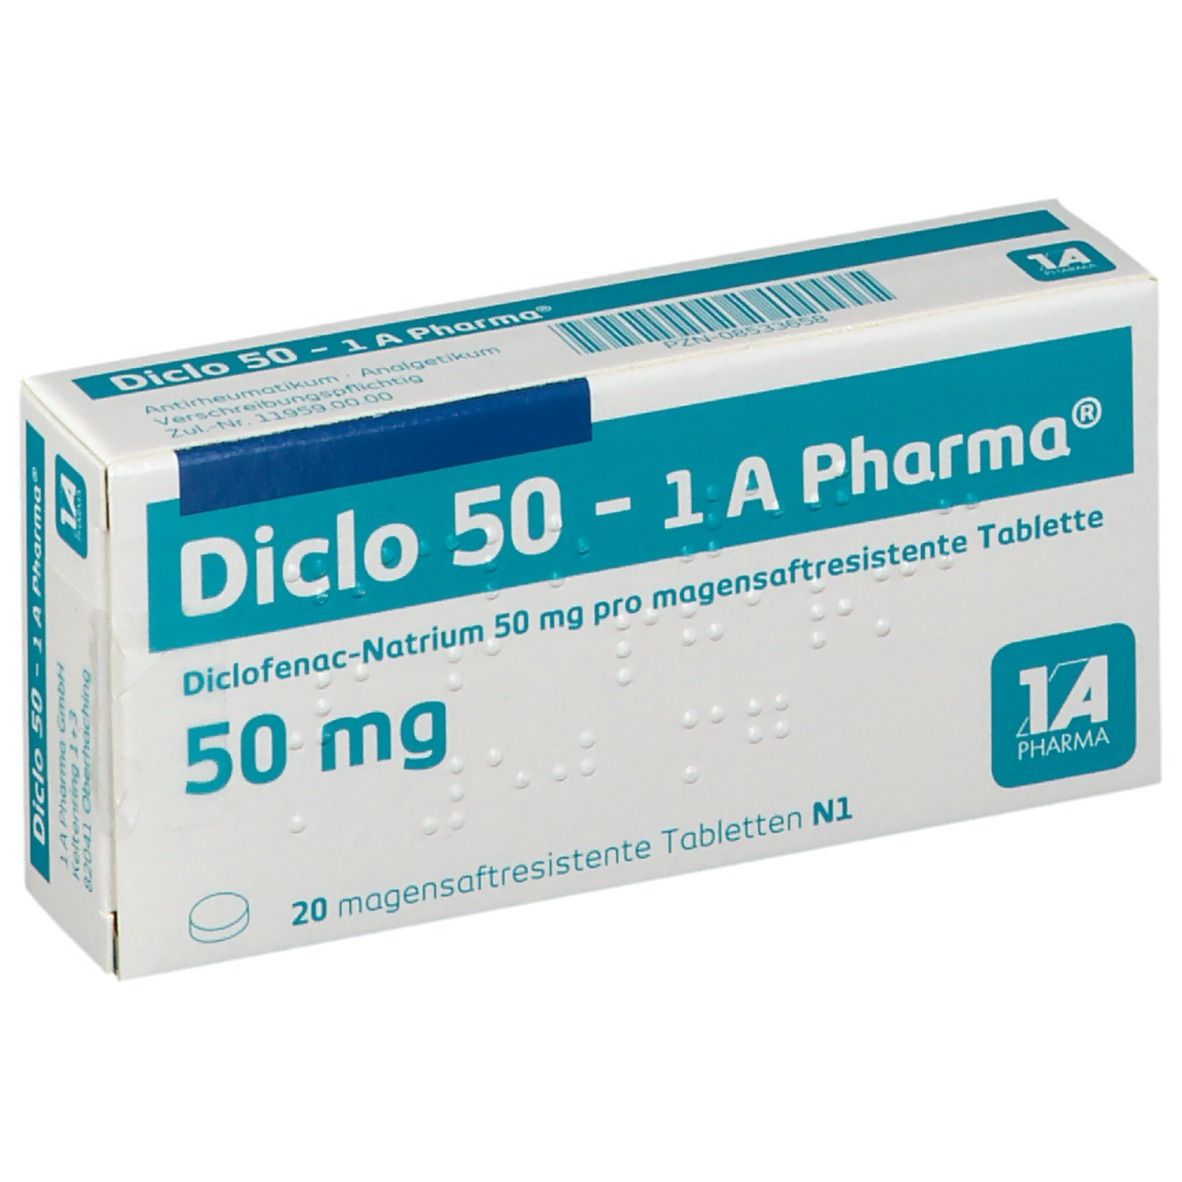 Diclo 50 1A Pharma®